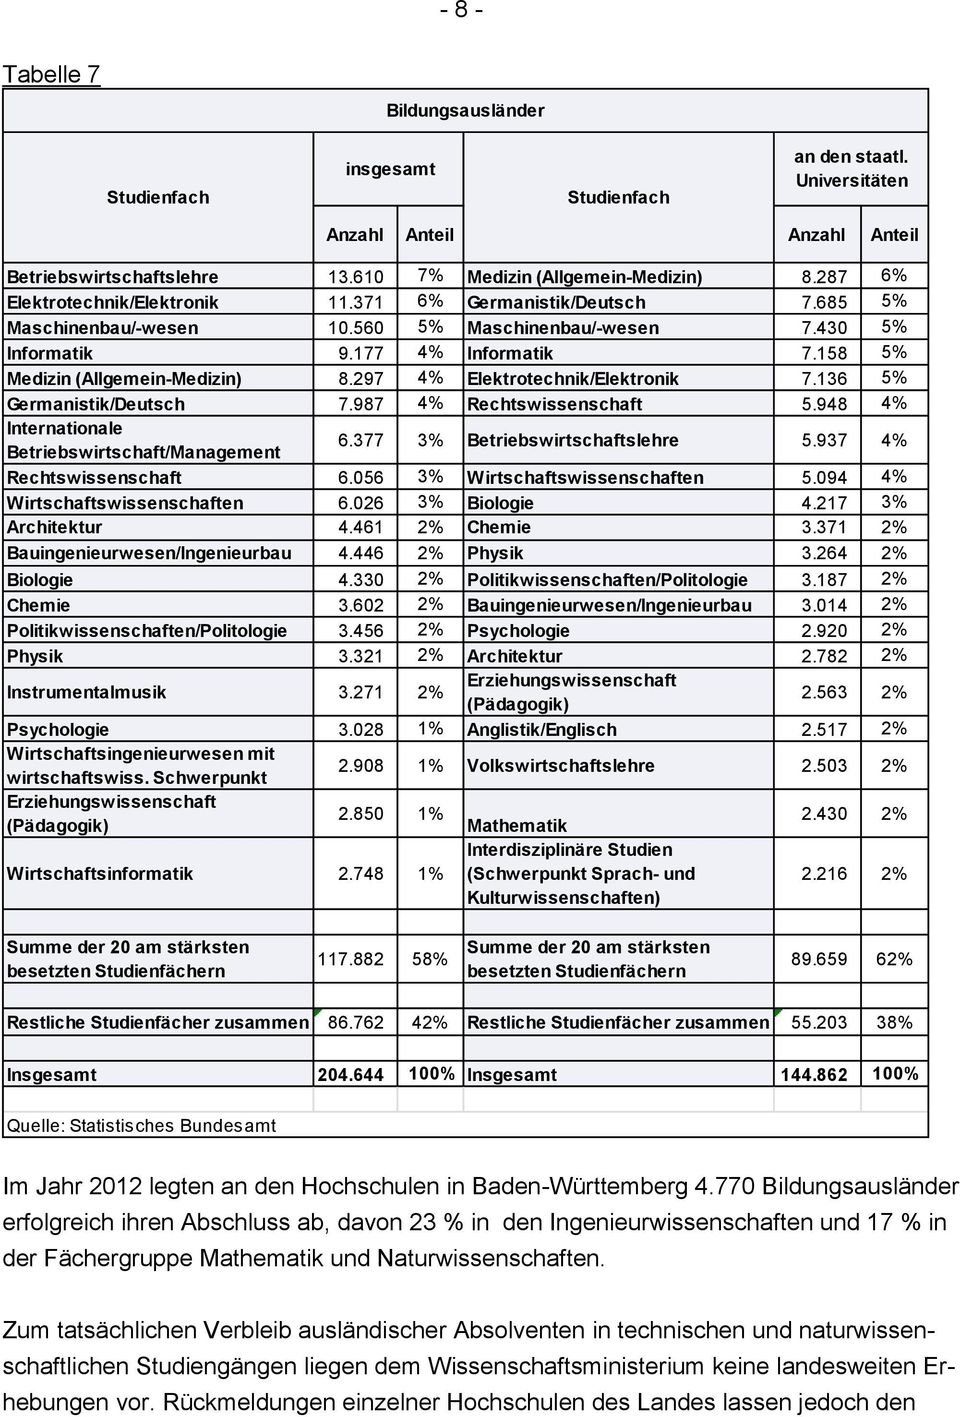 158 5% Medizin (Allgemein-Medizin) 8.297 4% Elektrotechnik/Elektronik 7.136 5% Germanistik/Deutsch 7.987 4% Rechtswissenschaft 5.948 4% Internationale Betriebswirtschaft/Management 6.